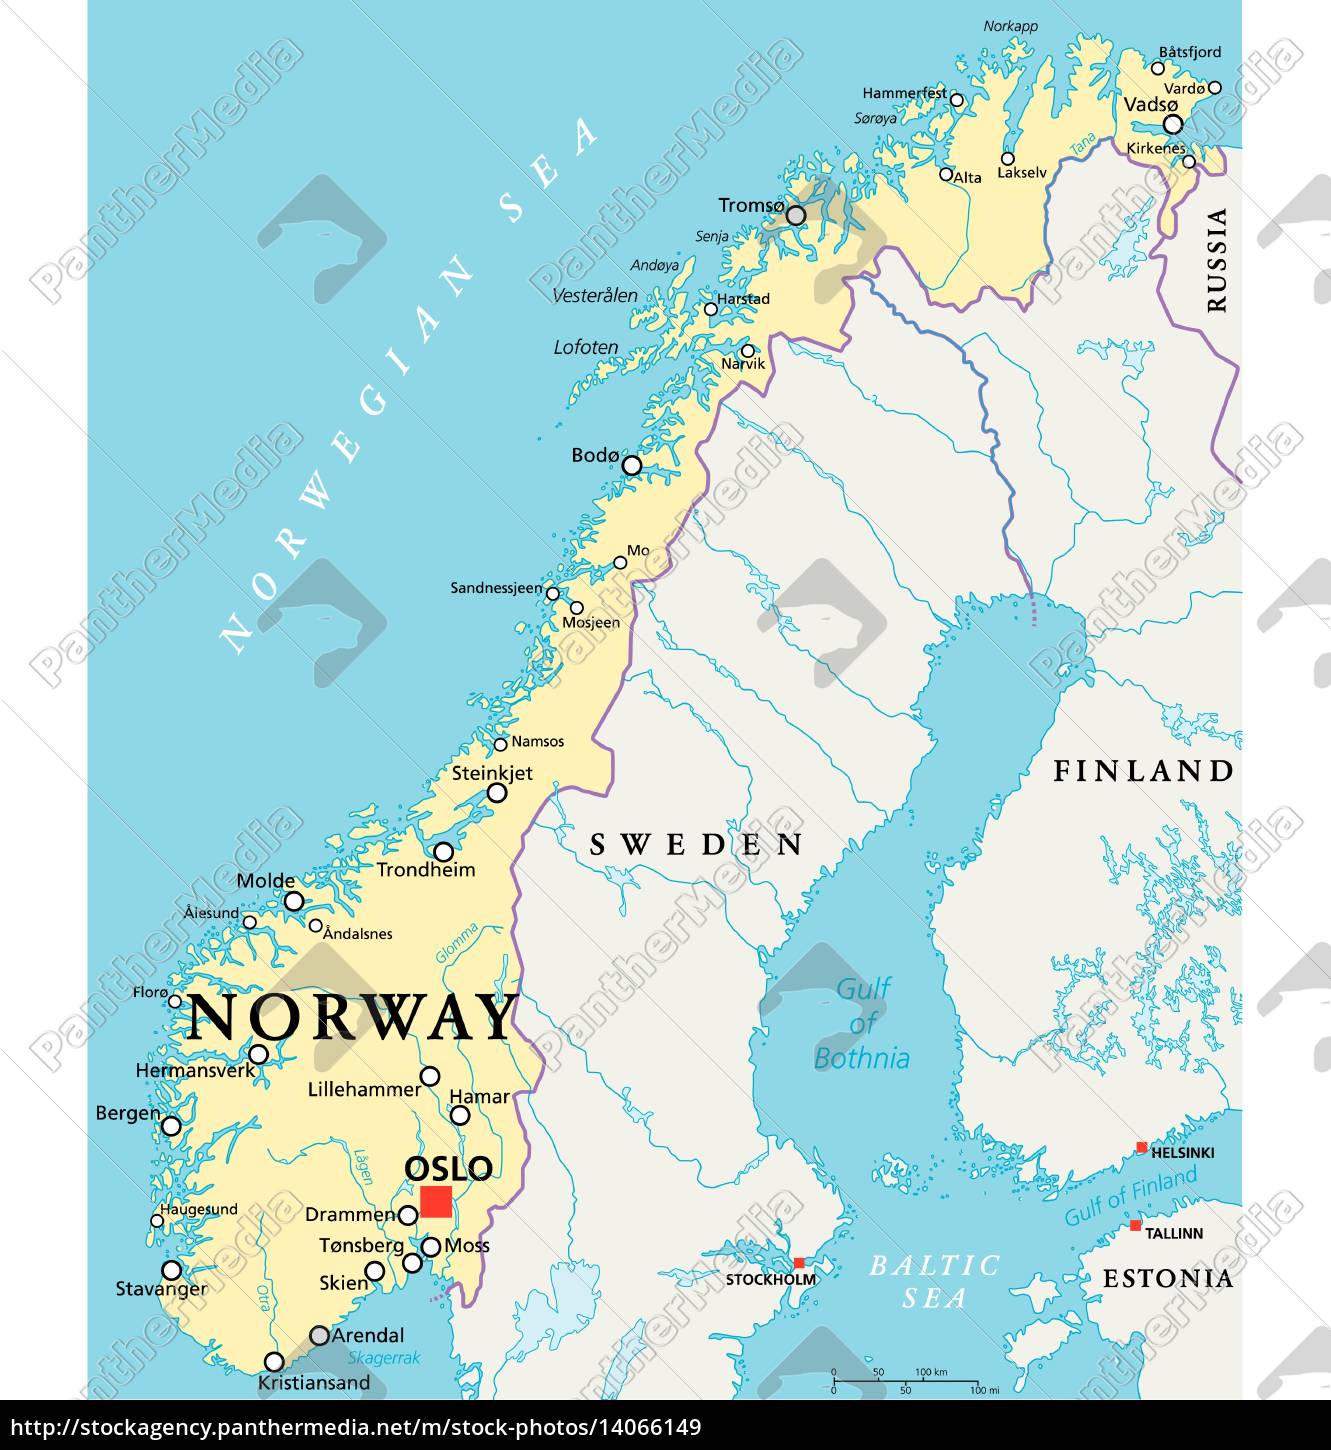 Kort Norge norge politisk kort   Royalty Free Image   #14066149  Kort Norge